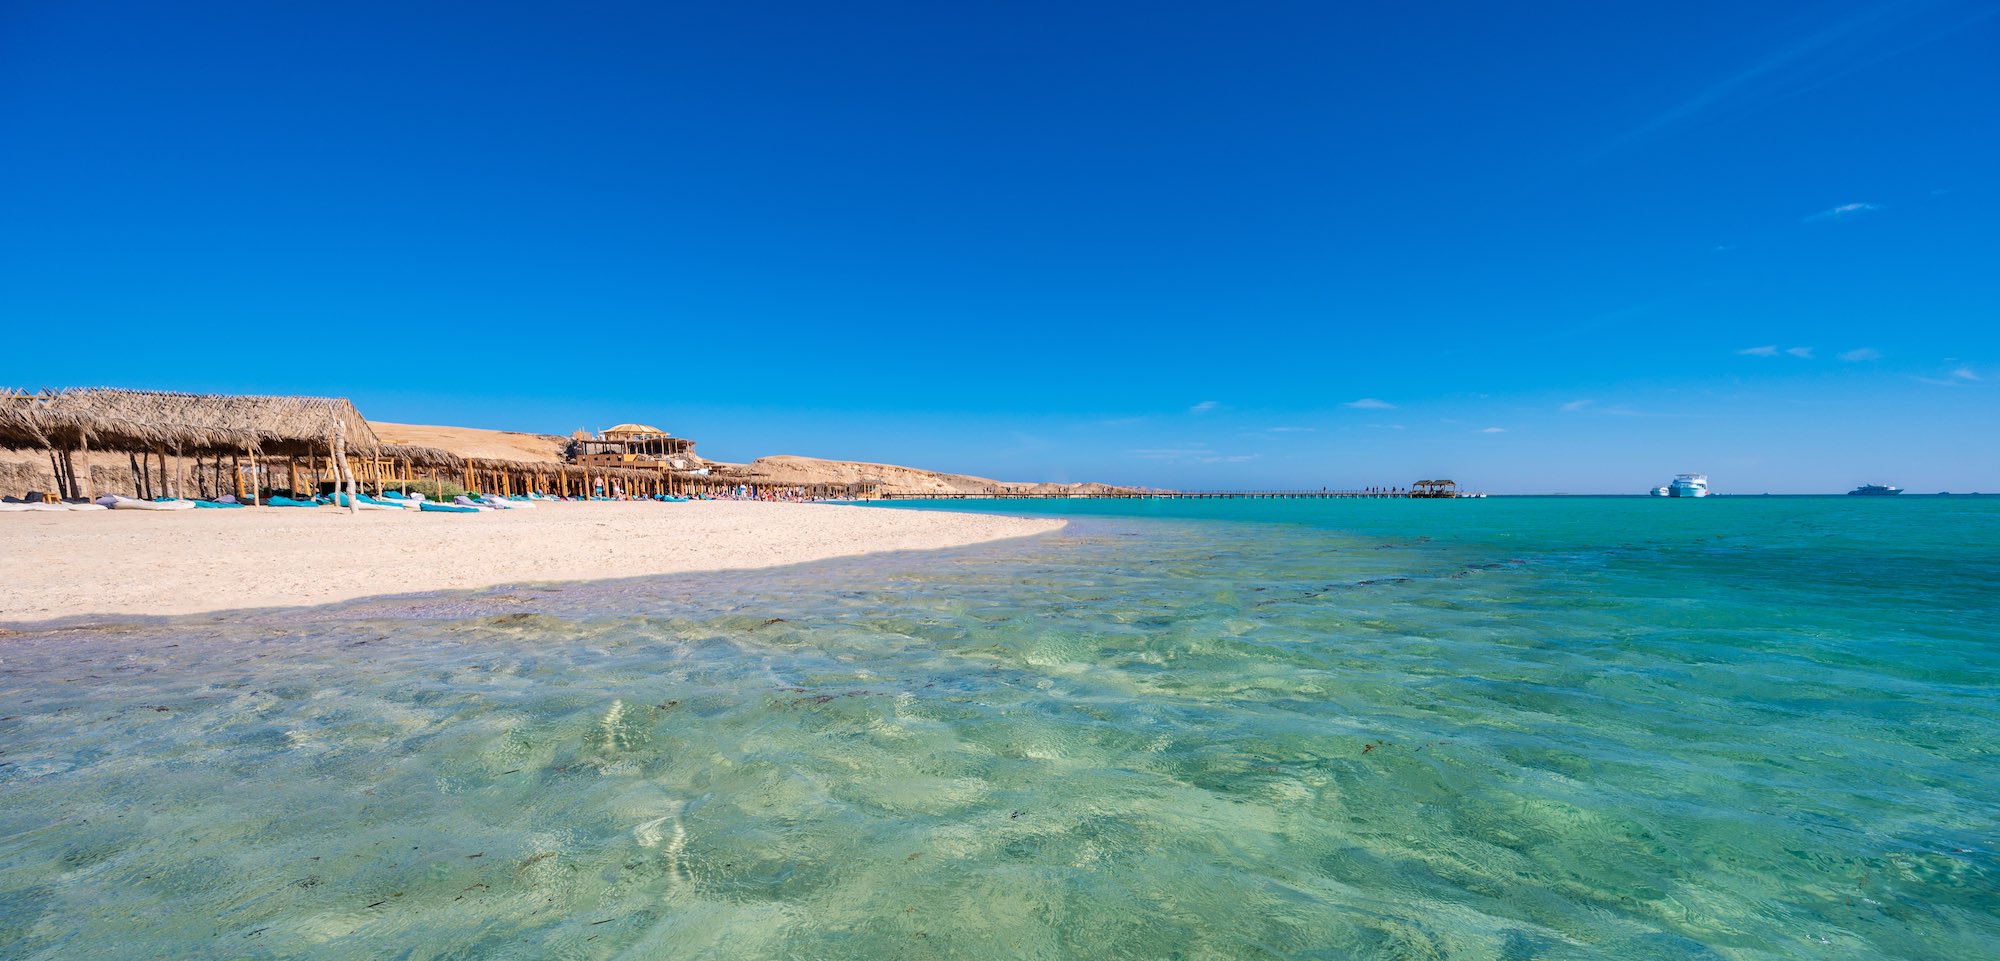 Giftun Island in der Nähe von Hurghada, Ägypten